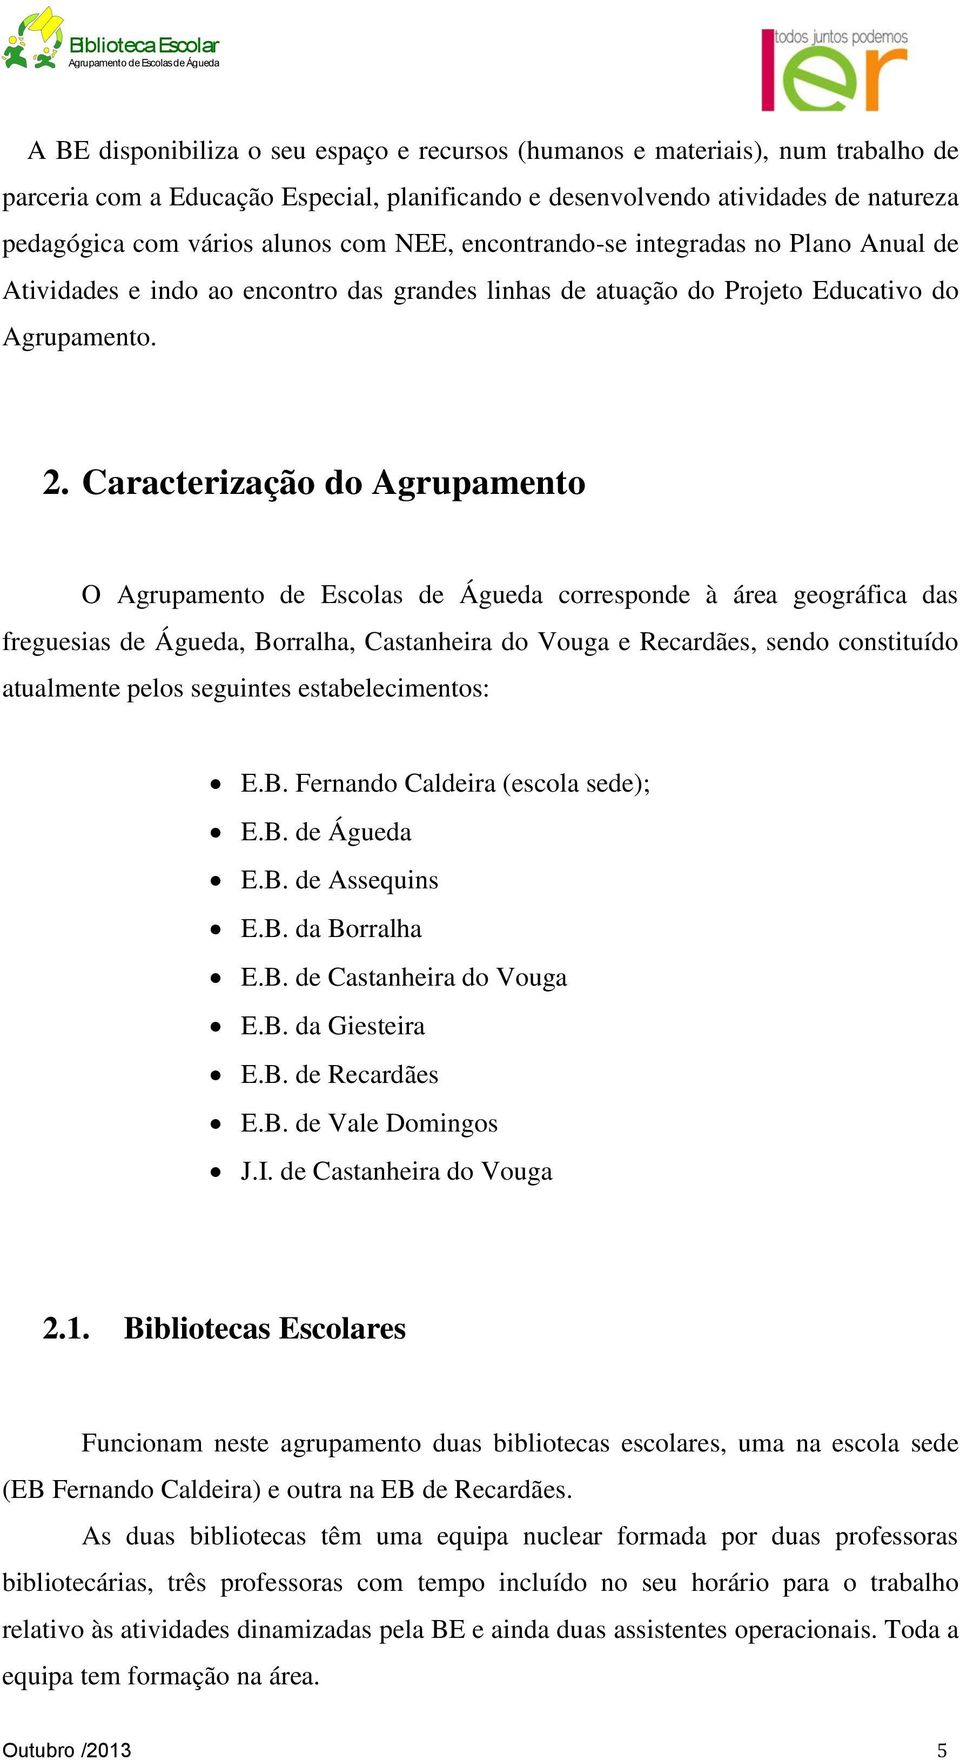 Caracterização do Agrupamento O Agrupamento de Escolas de Águeda corresponde à área geográfica das freguesias de Águeda, Borralha, Castanheira do Vouga e Recardães, sendo constituído atualmente pelos